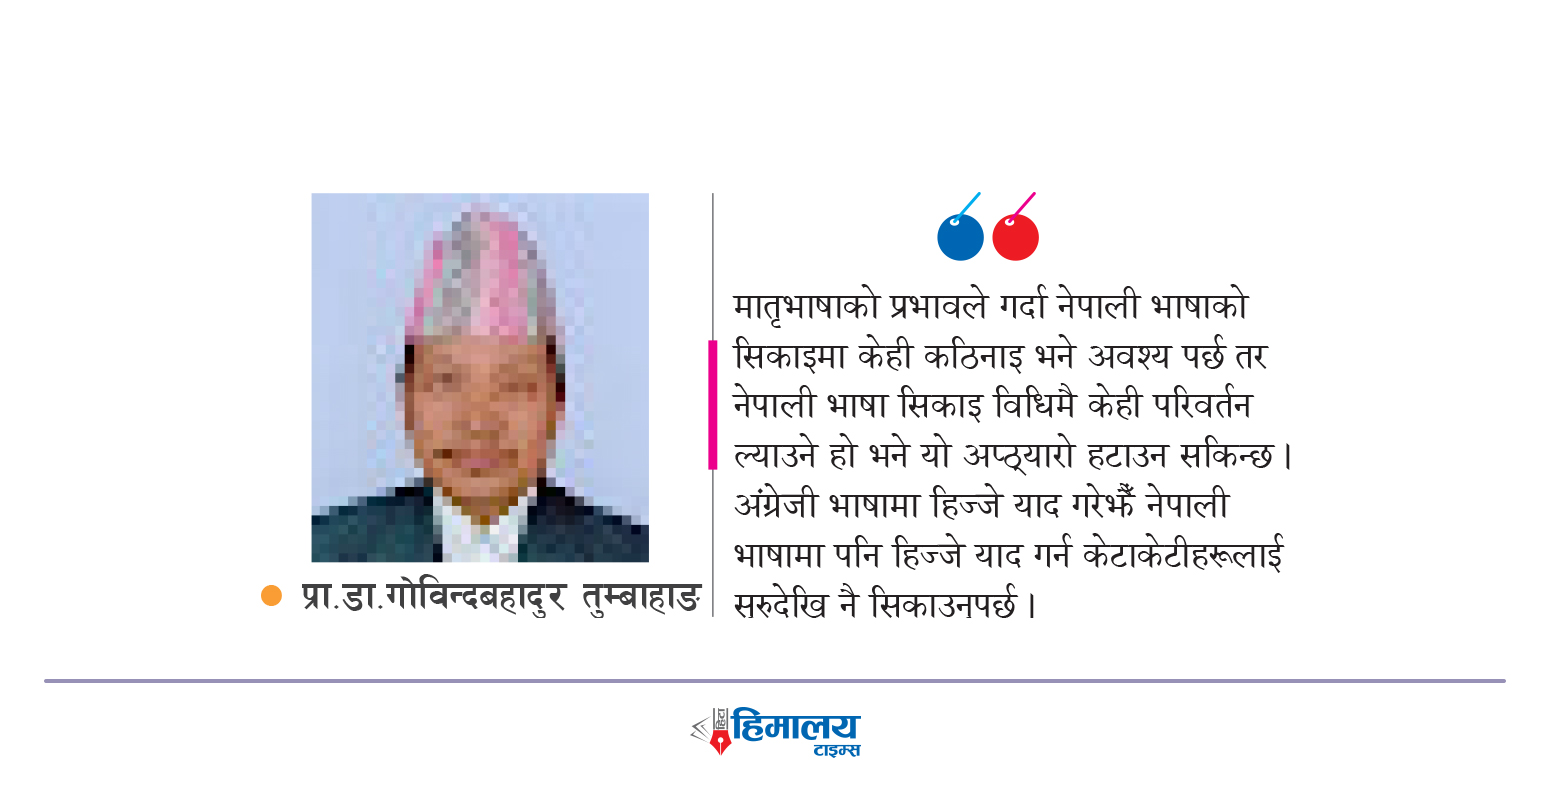 राष्ट्रिय एकताको माध्यम : नेपाली भाषा